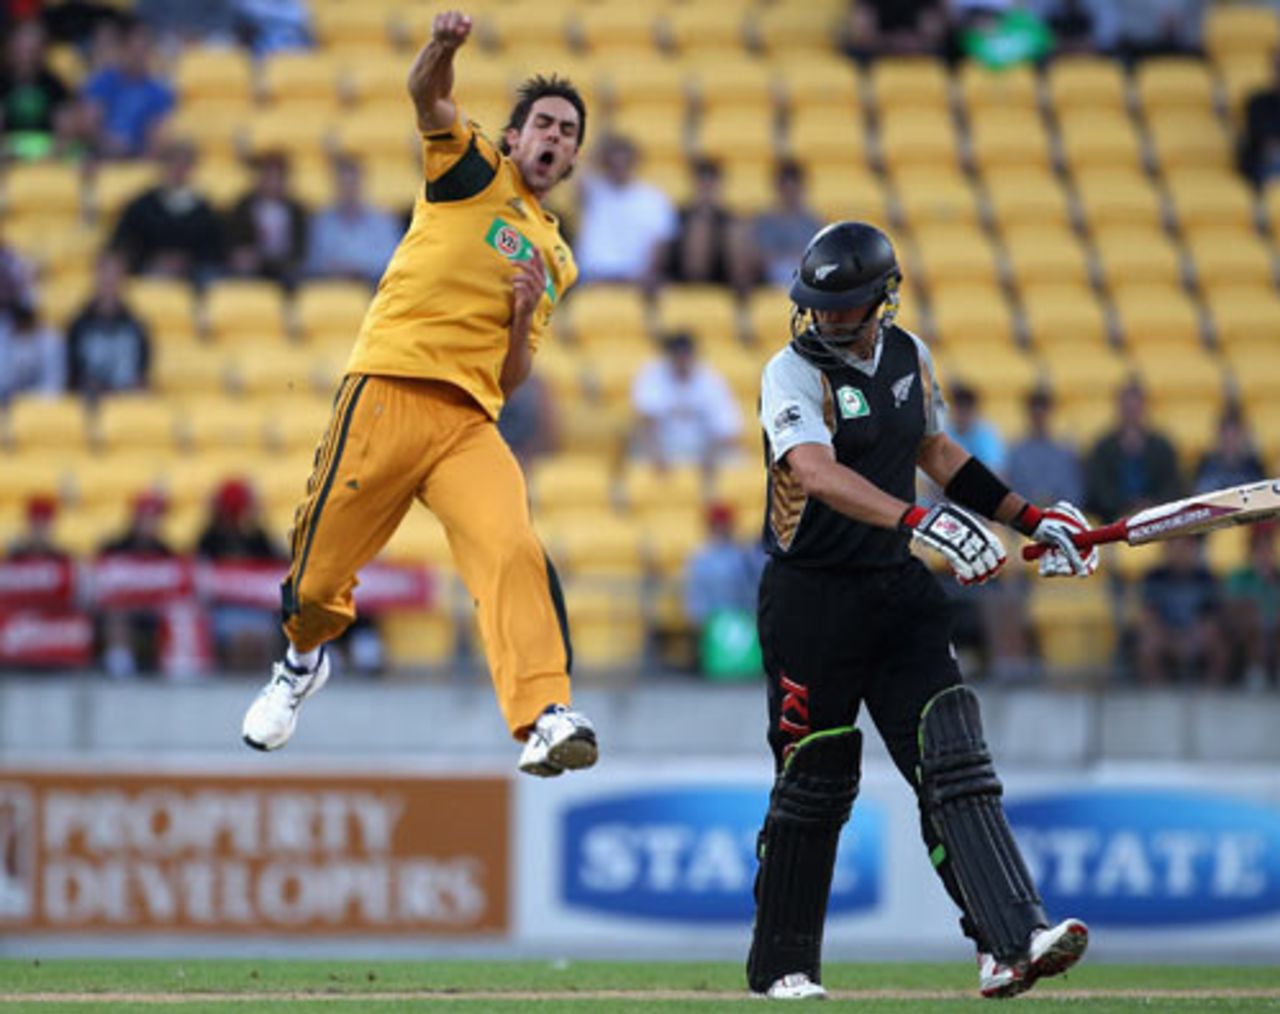 Mitchell Johnson is overjoyed after dismissing Peter Ingram, New Zealand v Australia, 1st Twenty20, Wellington, February 26, 2010